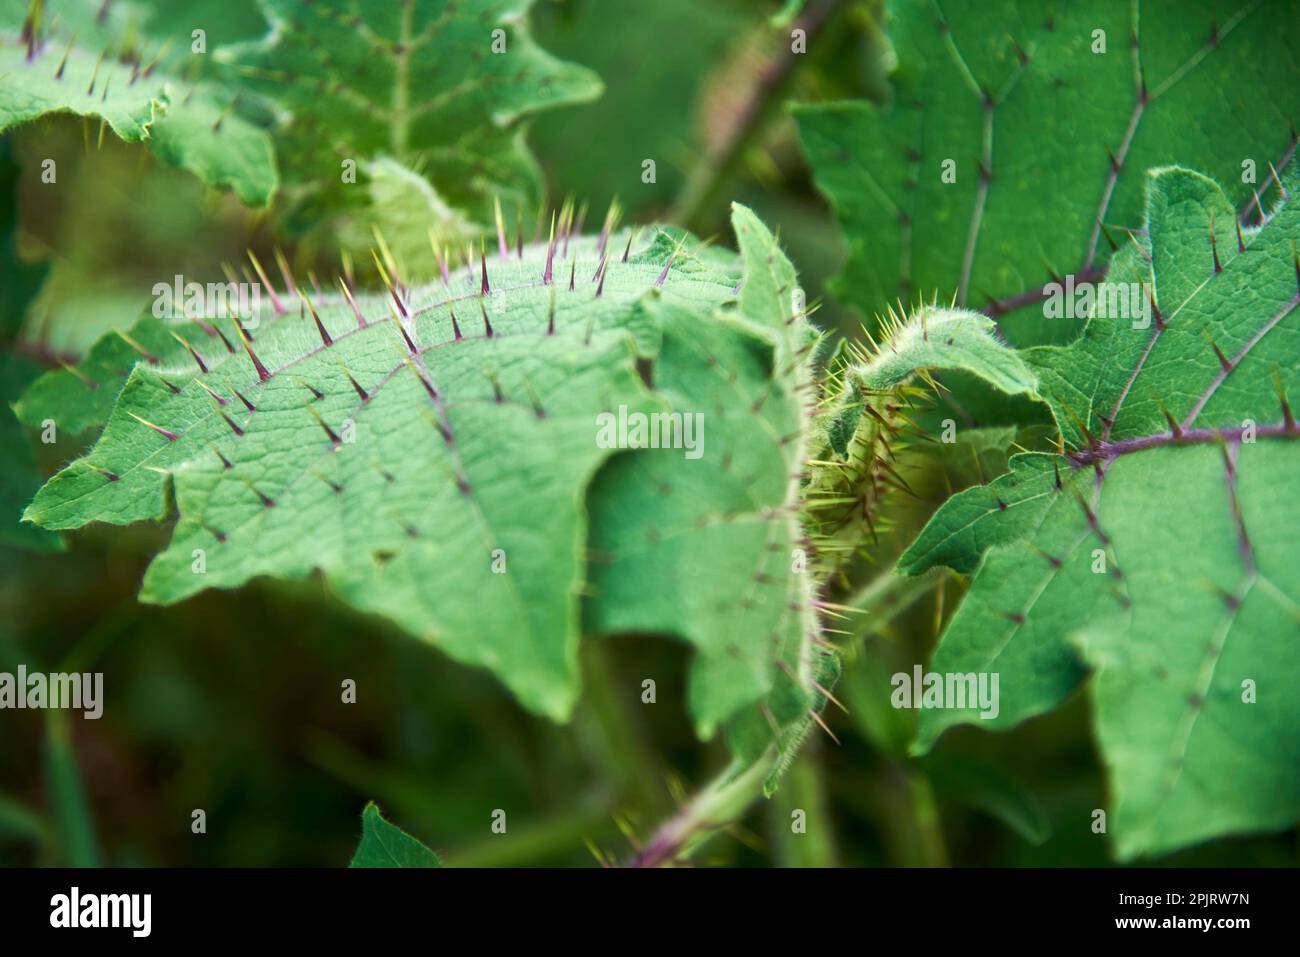 Feuilles vertes épineuses de solanum stramoniifolium, une plante de solanaceae d'Amérique du Sud qui a des épines à la surface de ses feuilles comme défense. Banque D'Images